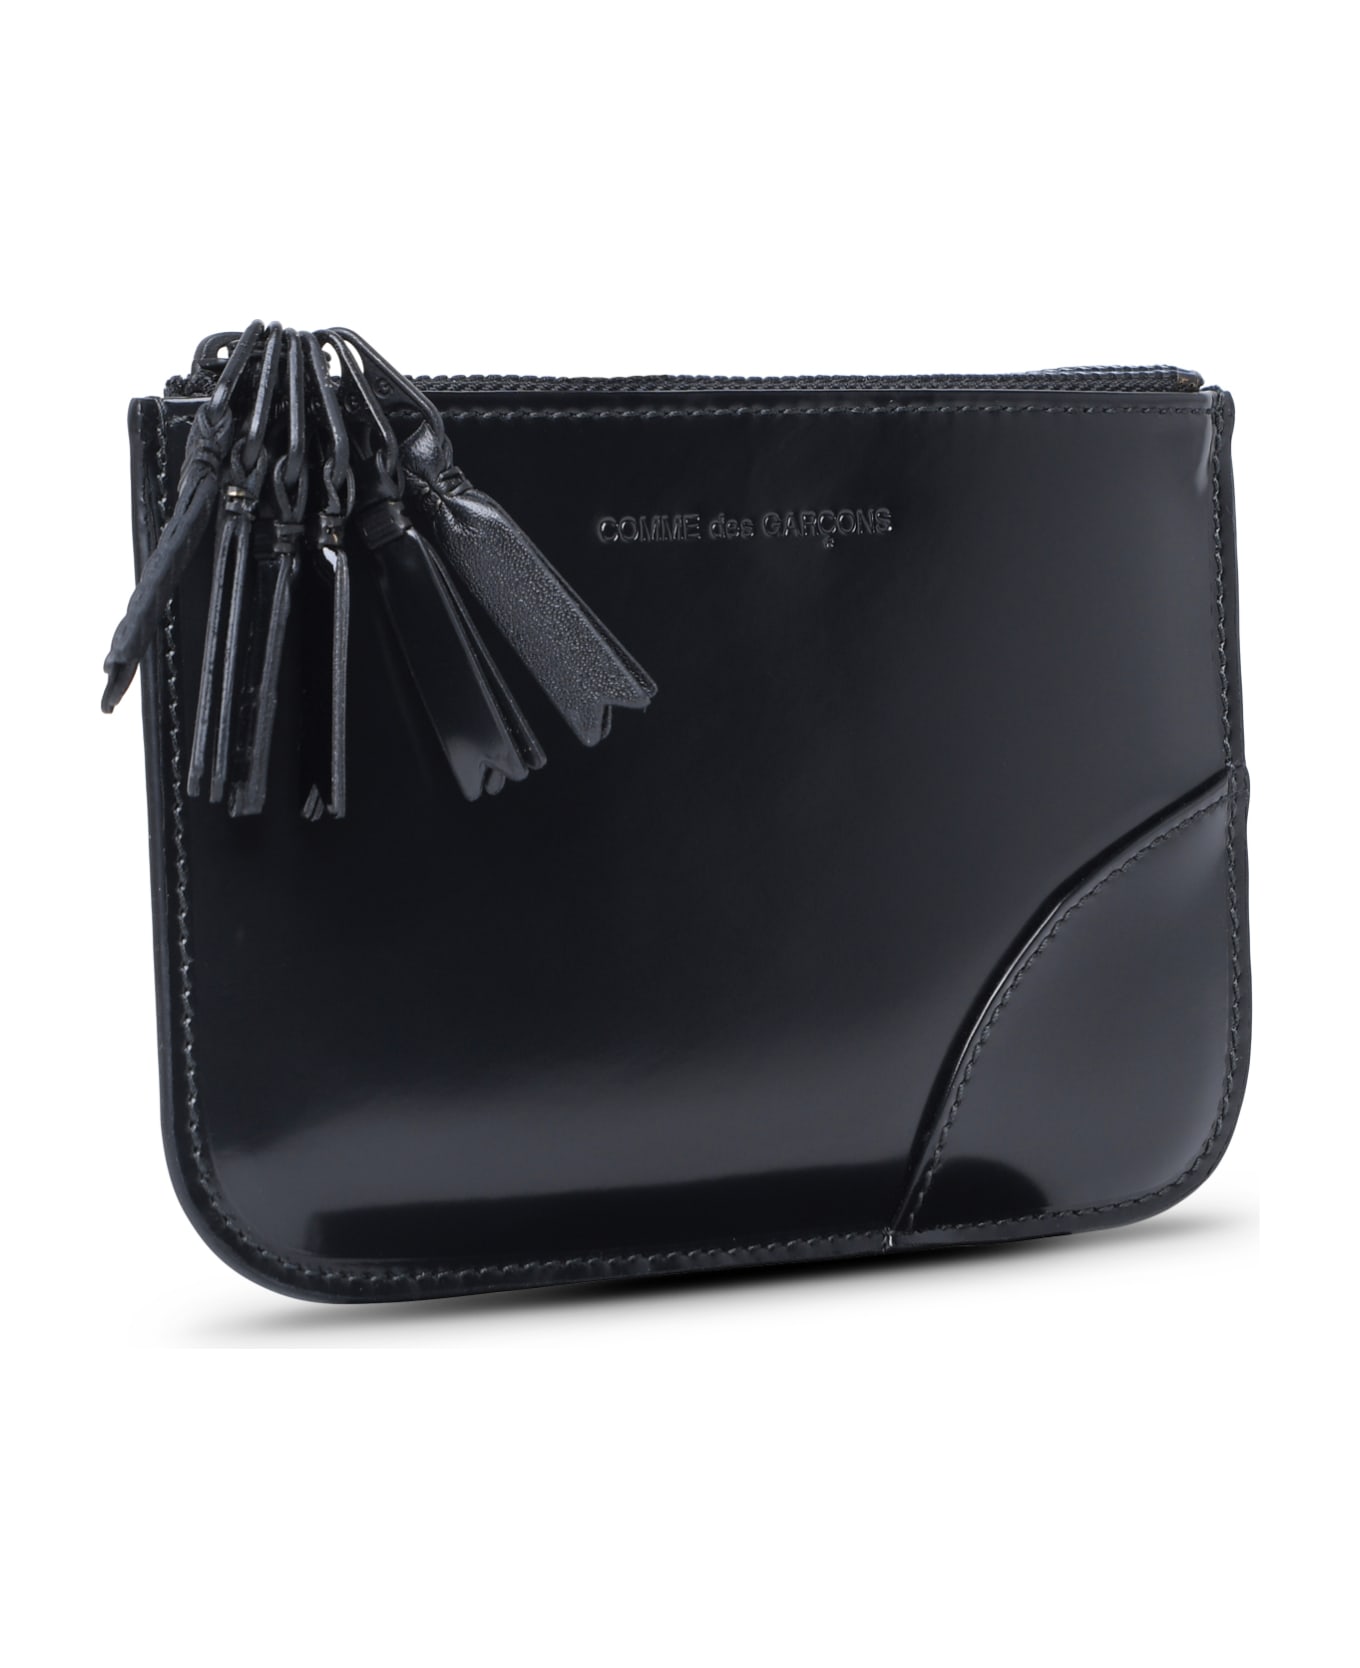 Comme des Garçons Wallet 'medley' Black Leather Card Holder - Black 財布